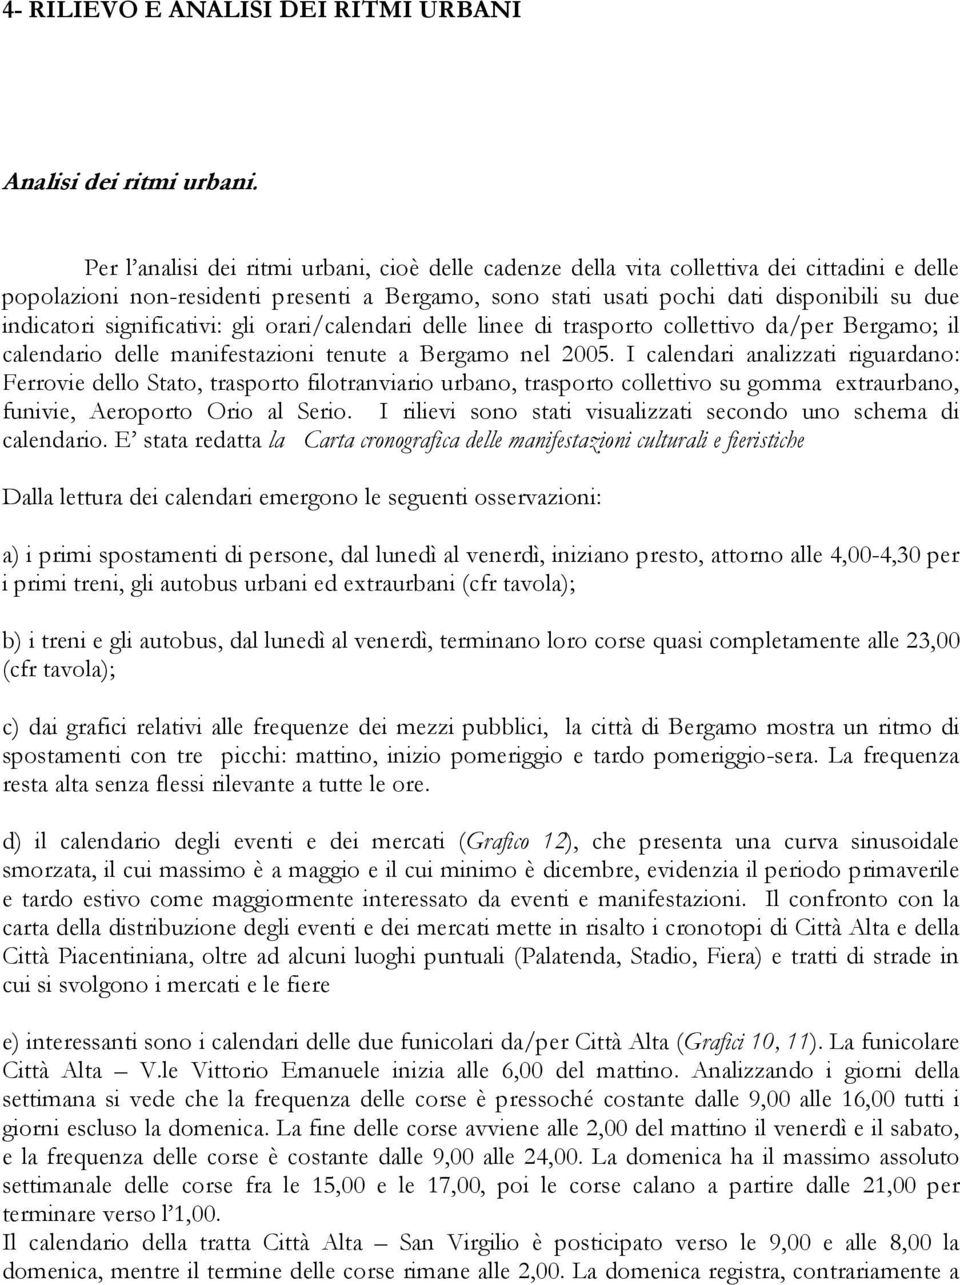 significativi: gli orari/calendari delle linee di trasporto collettivo da/per Bergamo; il calendario delle manifestazioni tenute a Bergamo nel 2005.